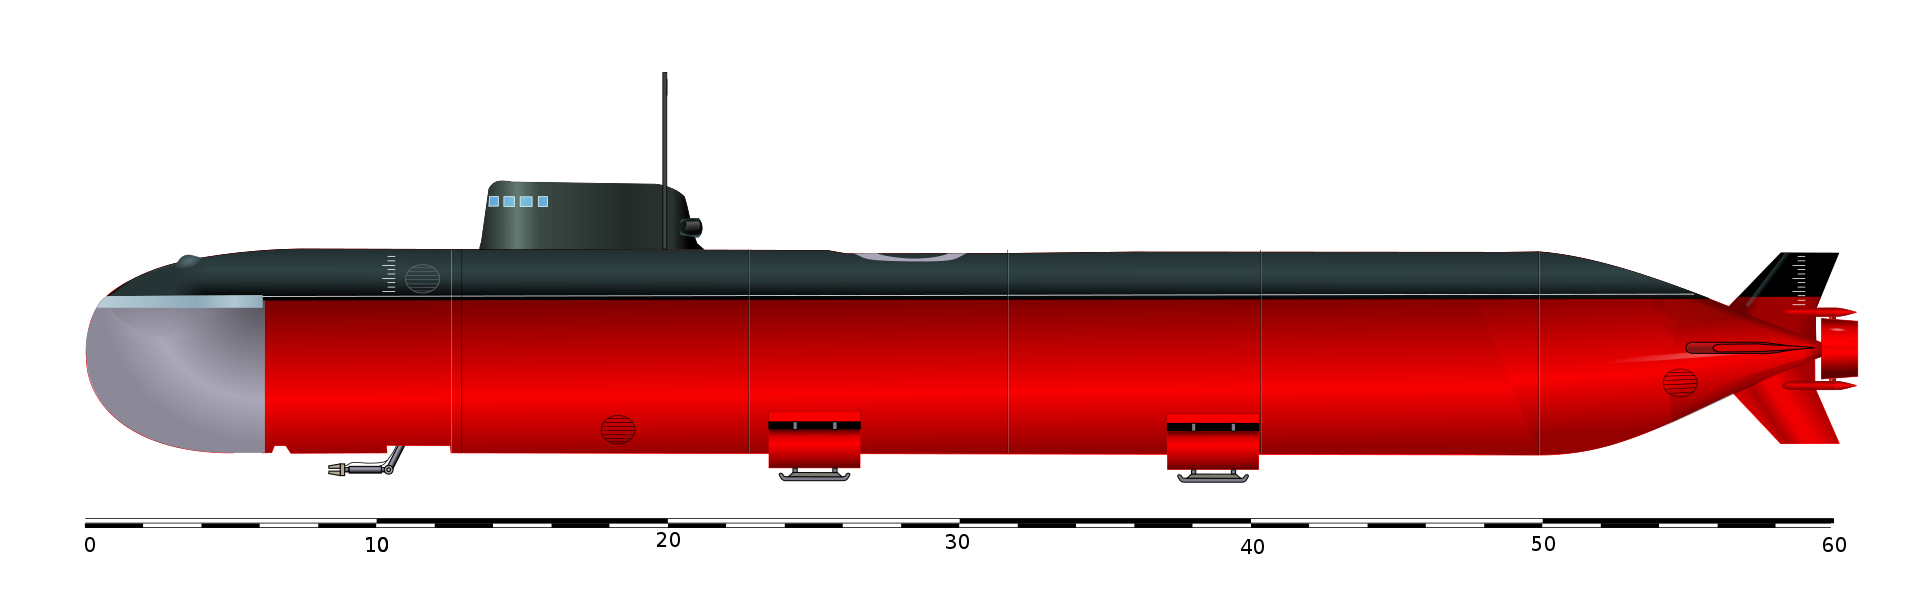 Ас-12 «лошарик» – атомная глубоководная станция - sneg5.com